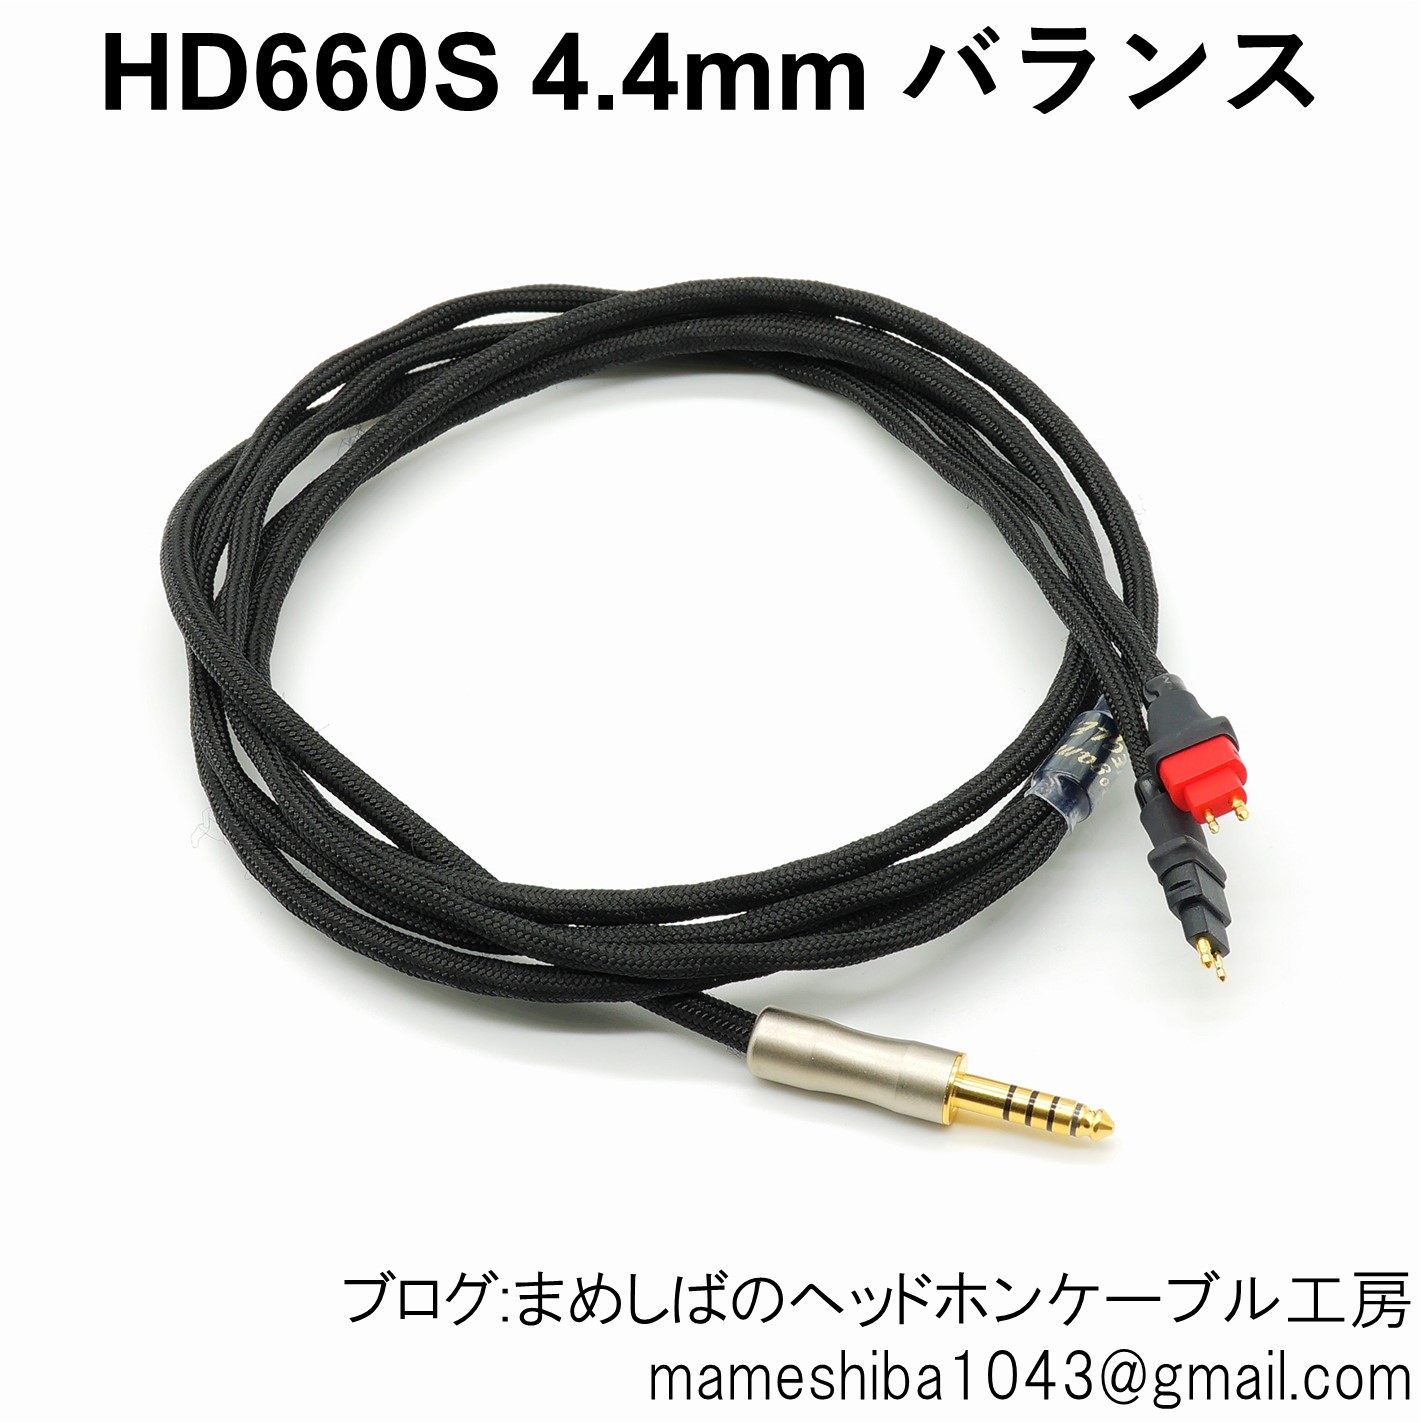 HD660S 4.4mm バランス リケーブル : まめしばのヘッドホン・ケーブル工房